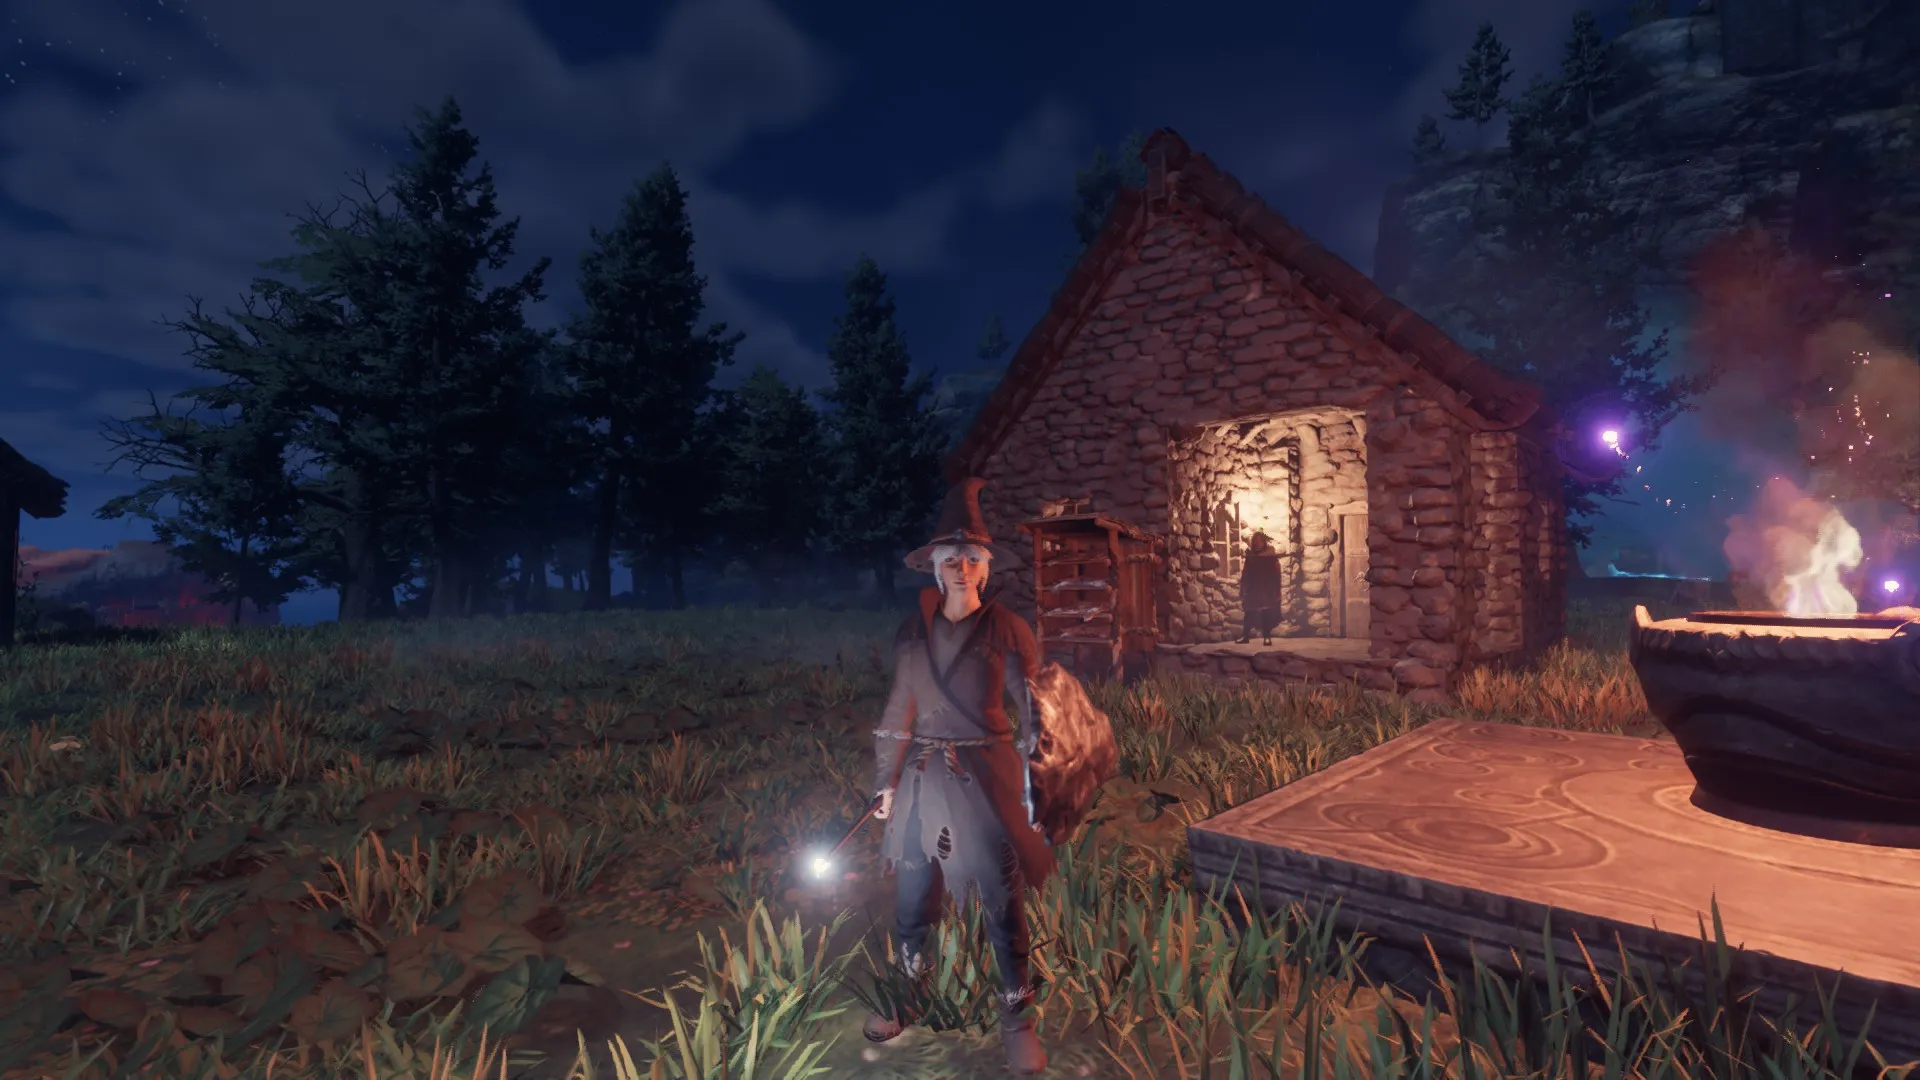 Игрок в плаще стоит с палочкой в темноте